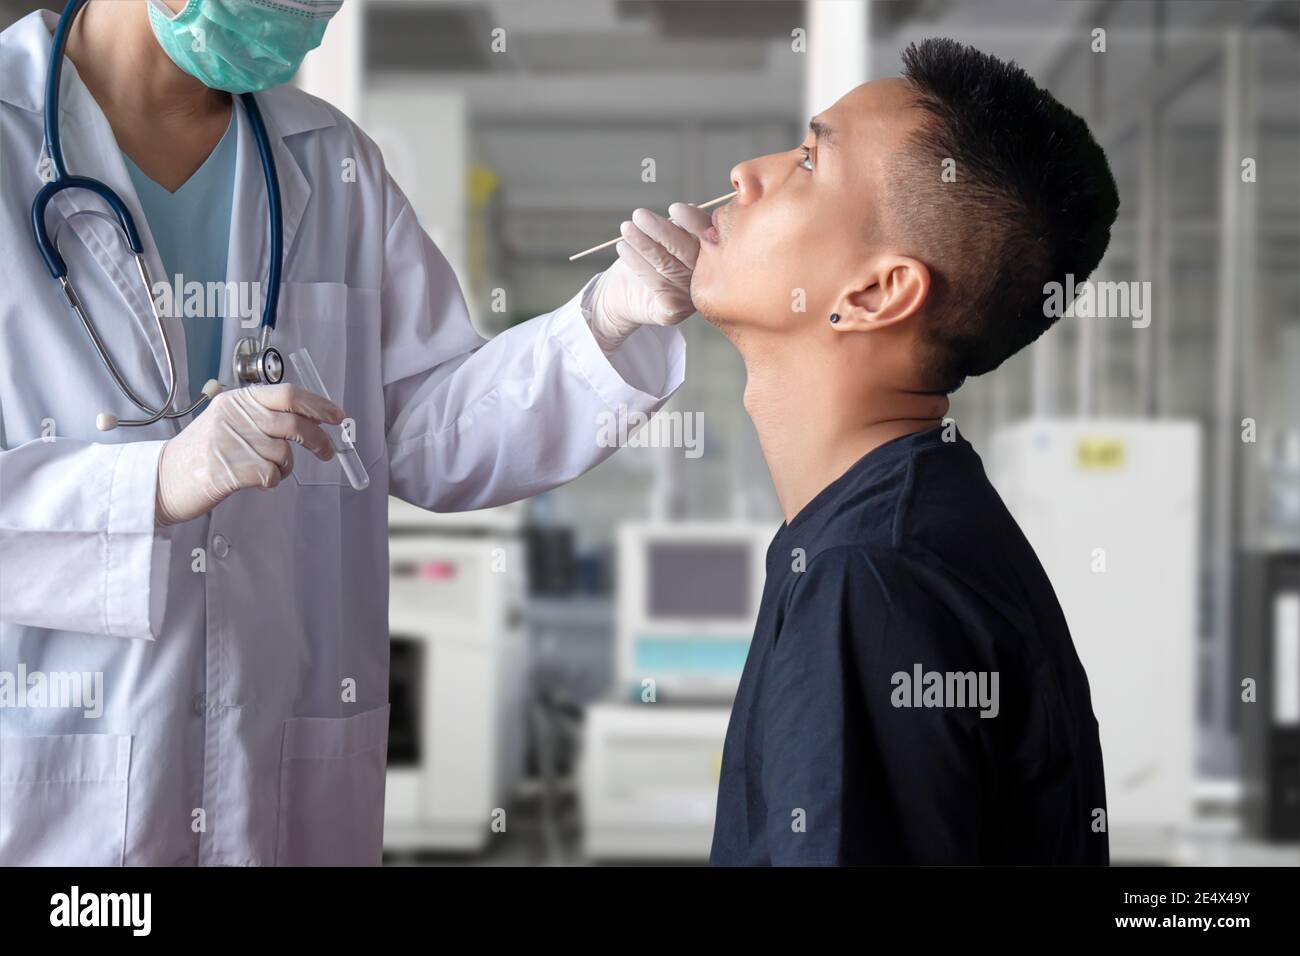 Coronavirus COVID-19 Testkonzept. Arzt Hand hält Reagenzglas, verwenden Wattestäbchen, um nasale Sekretionsprobe vom Patienten für den Infektionstest zu sammeln Stockfoto